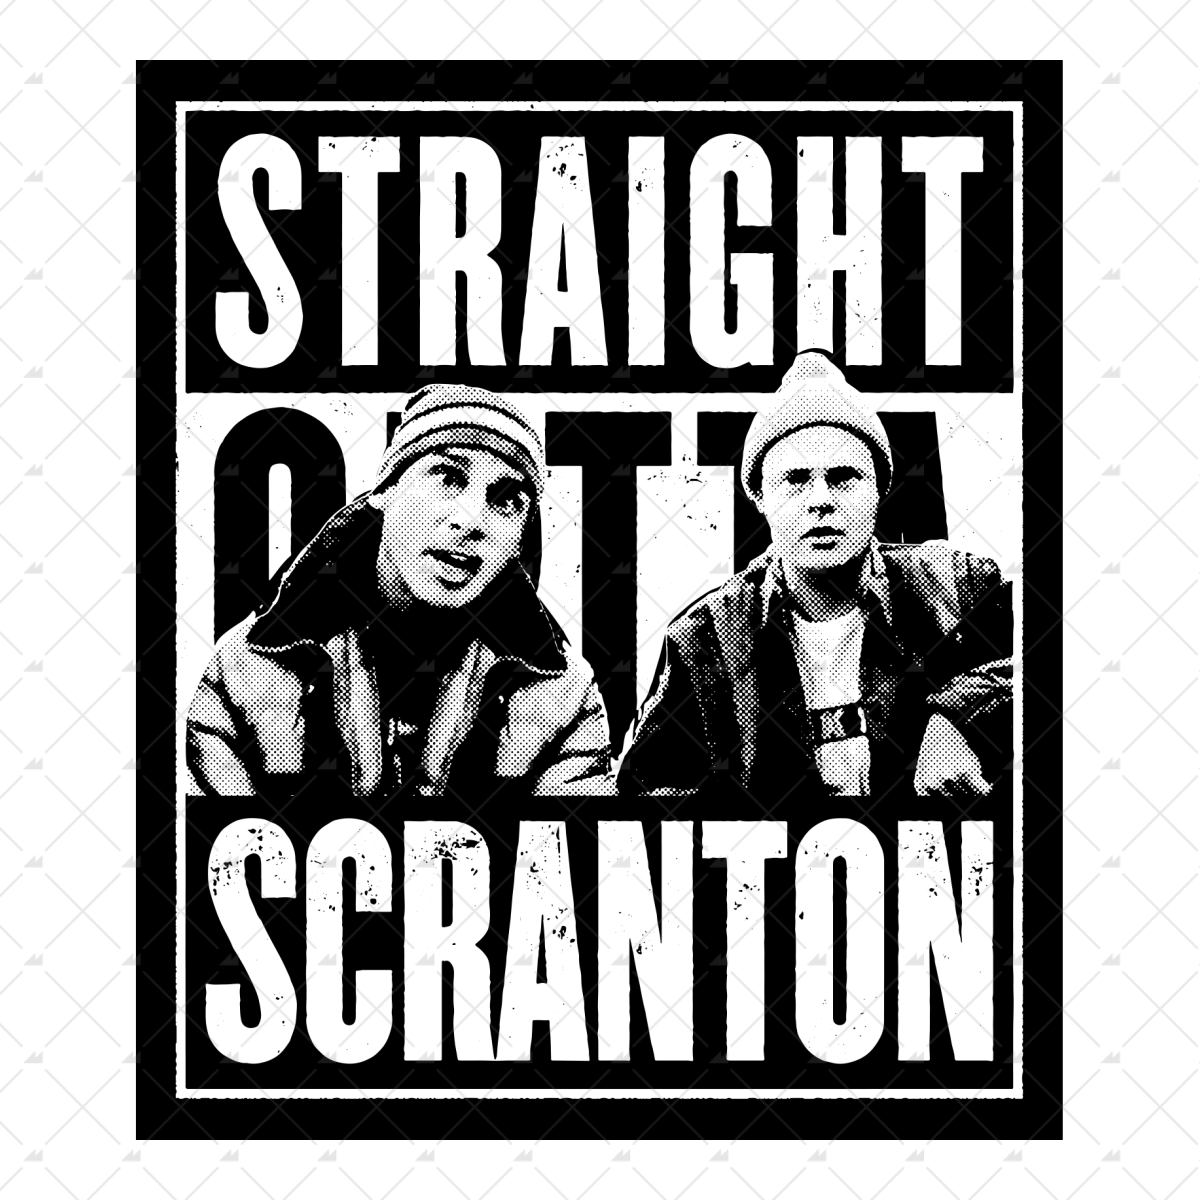 Straight Outta Scranton - Sticker